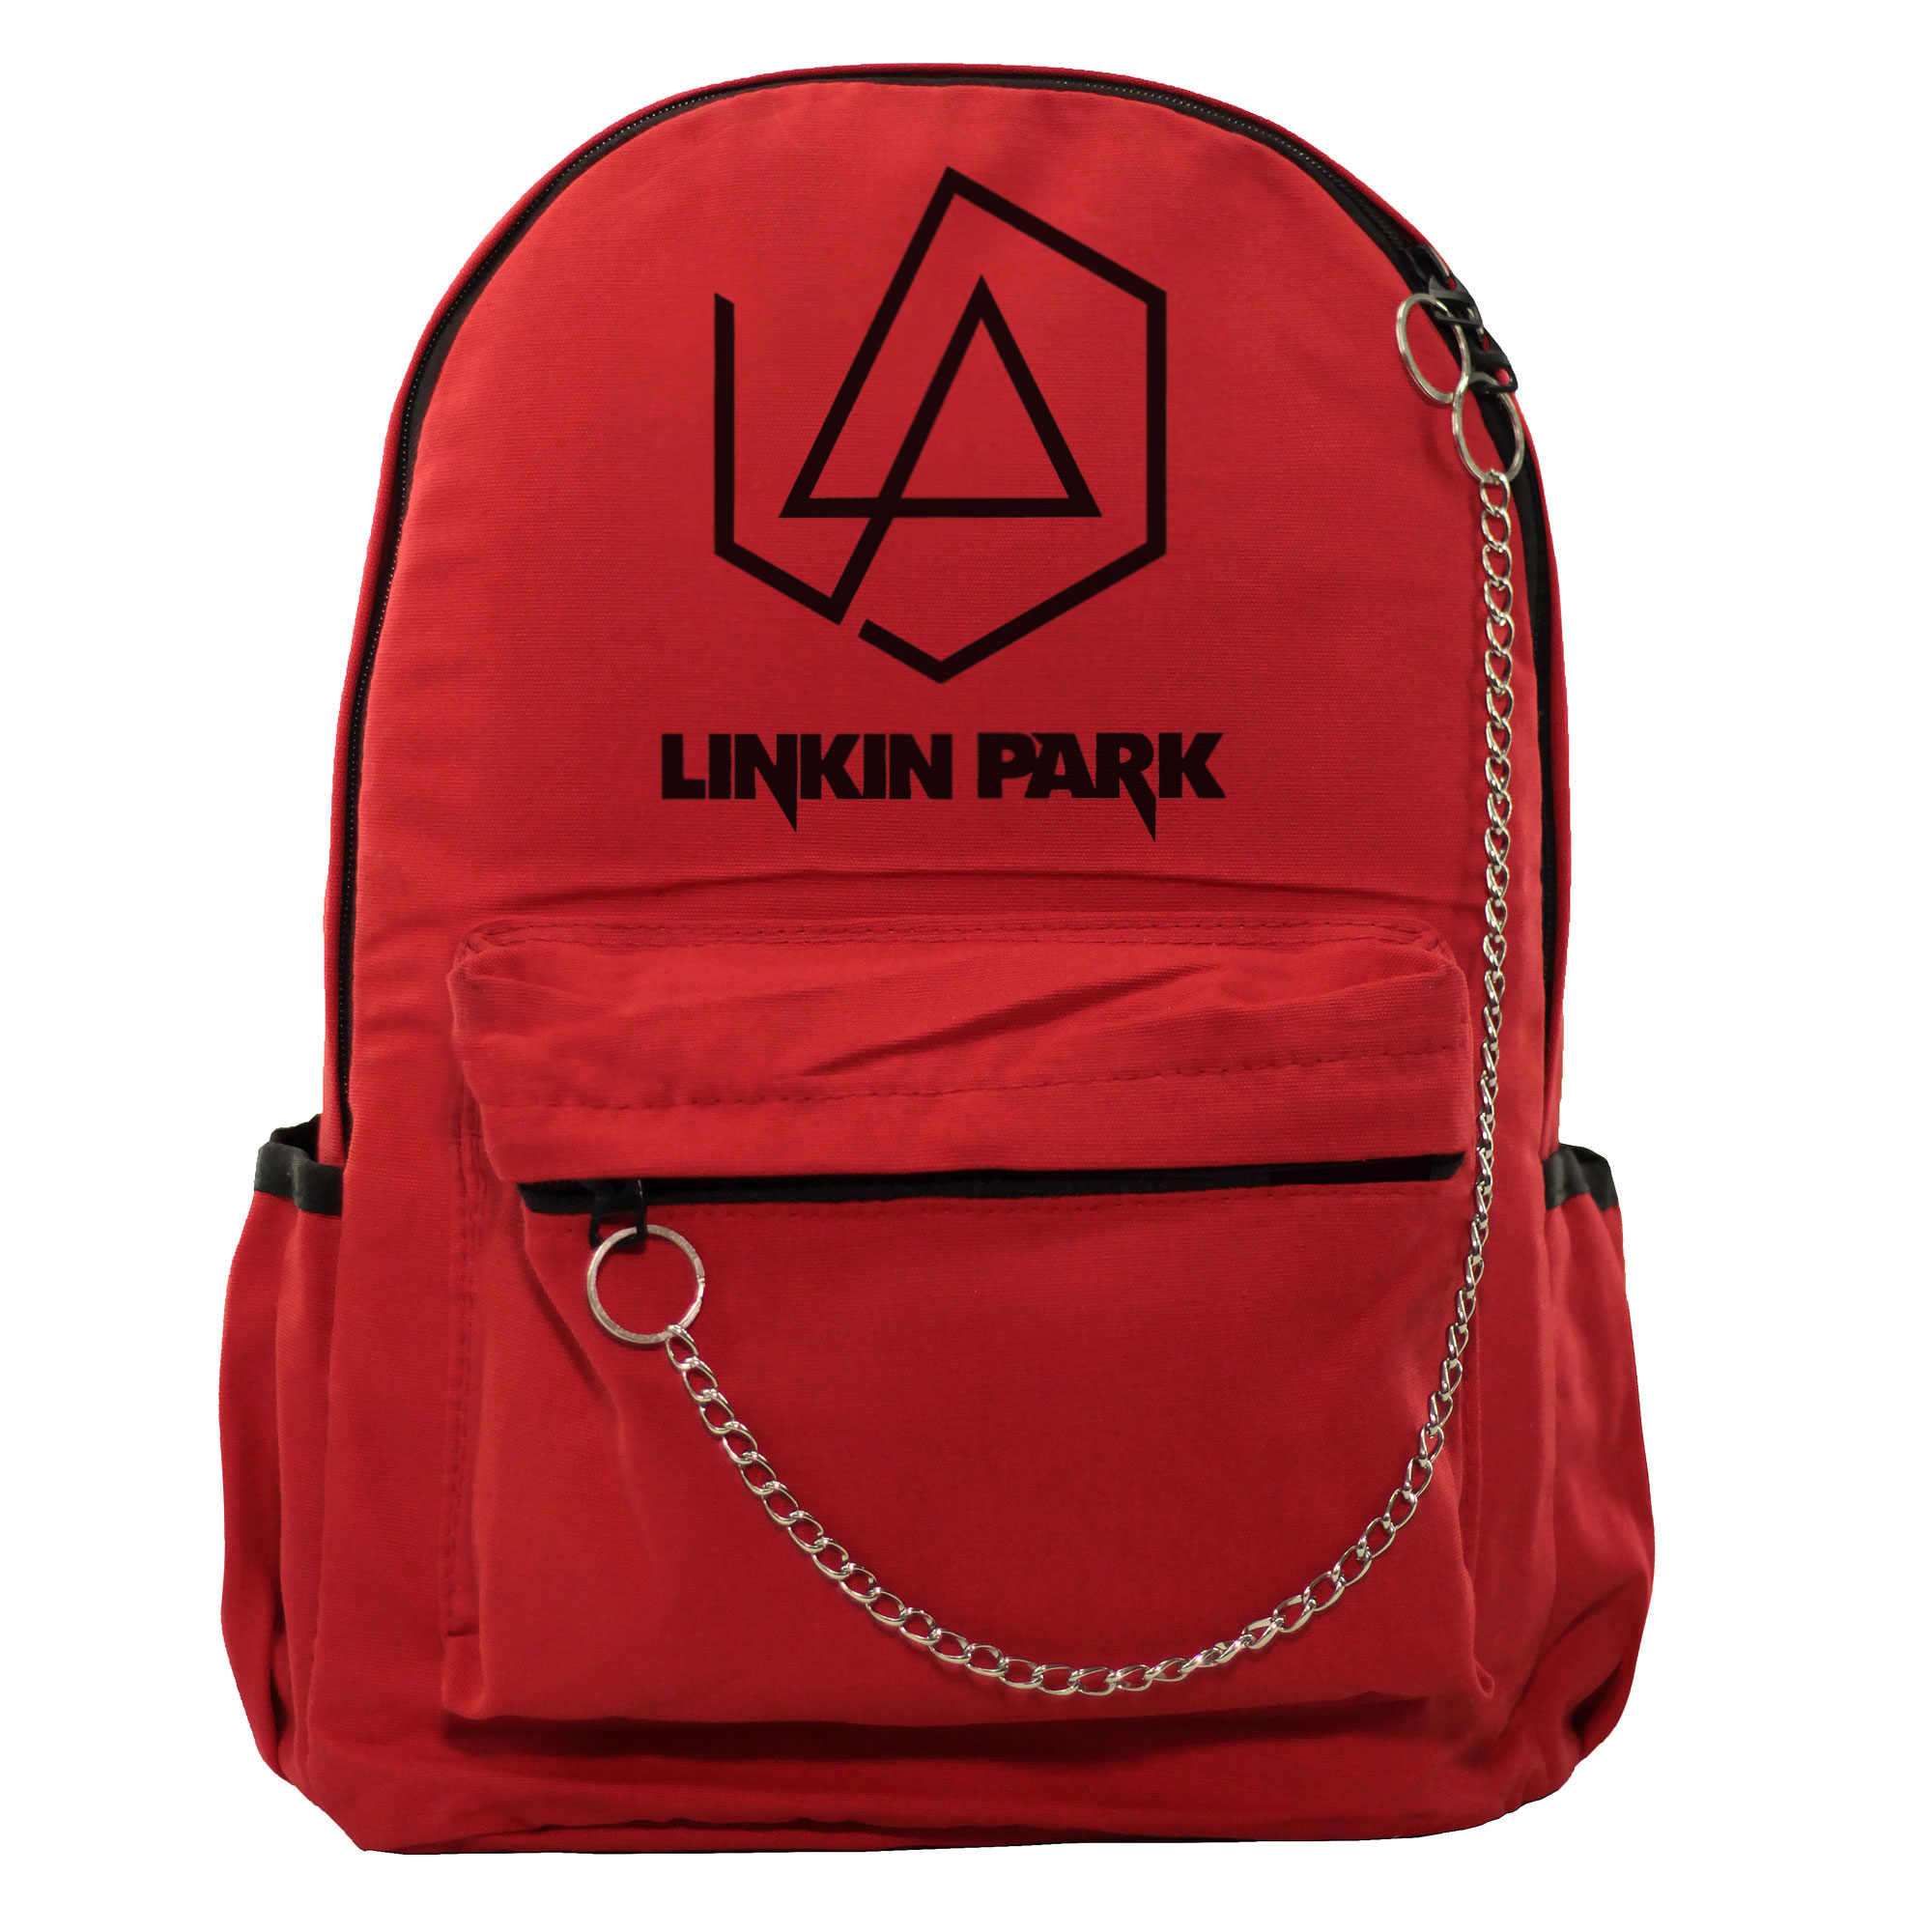 کوله پشتی چی چاپ طرح گروه لینکین پارک کد Linkin Park